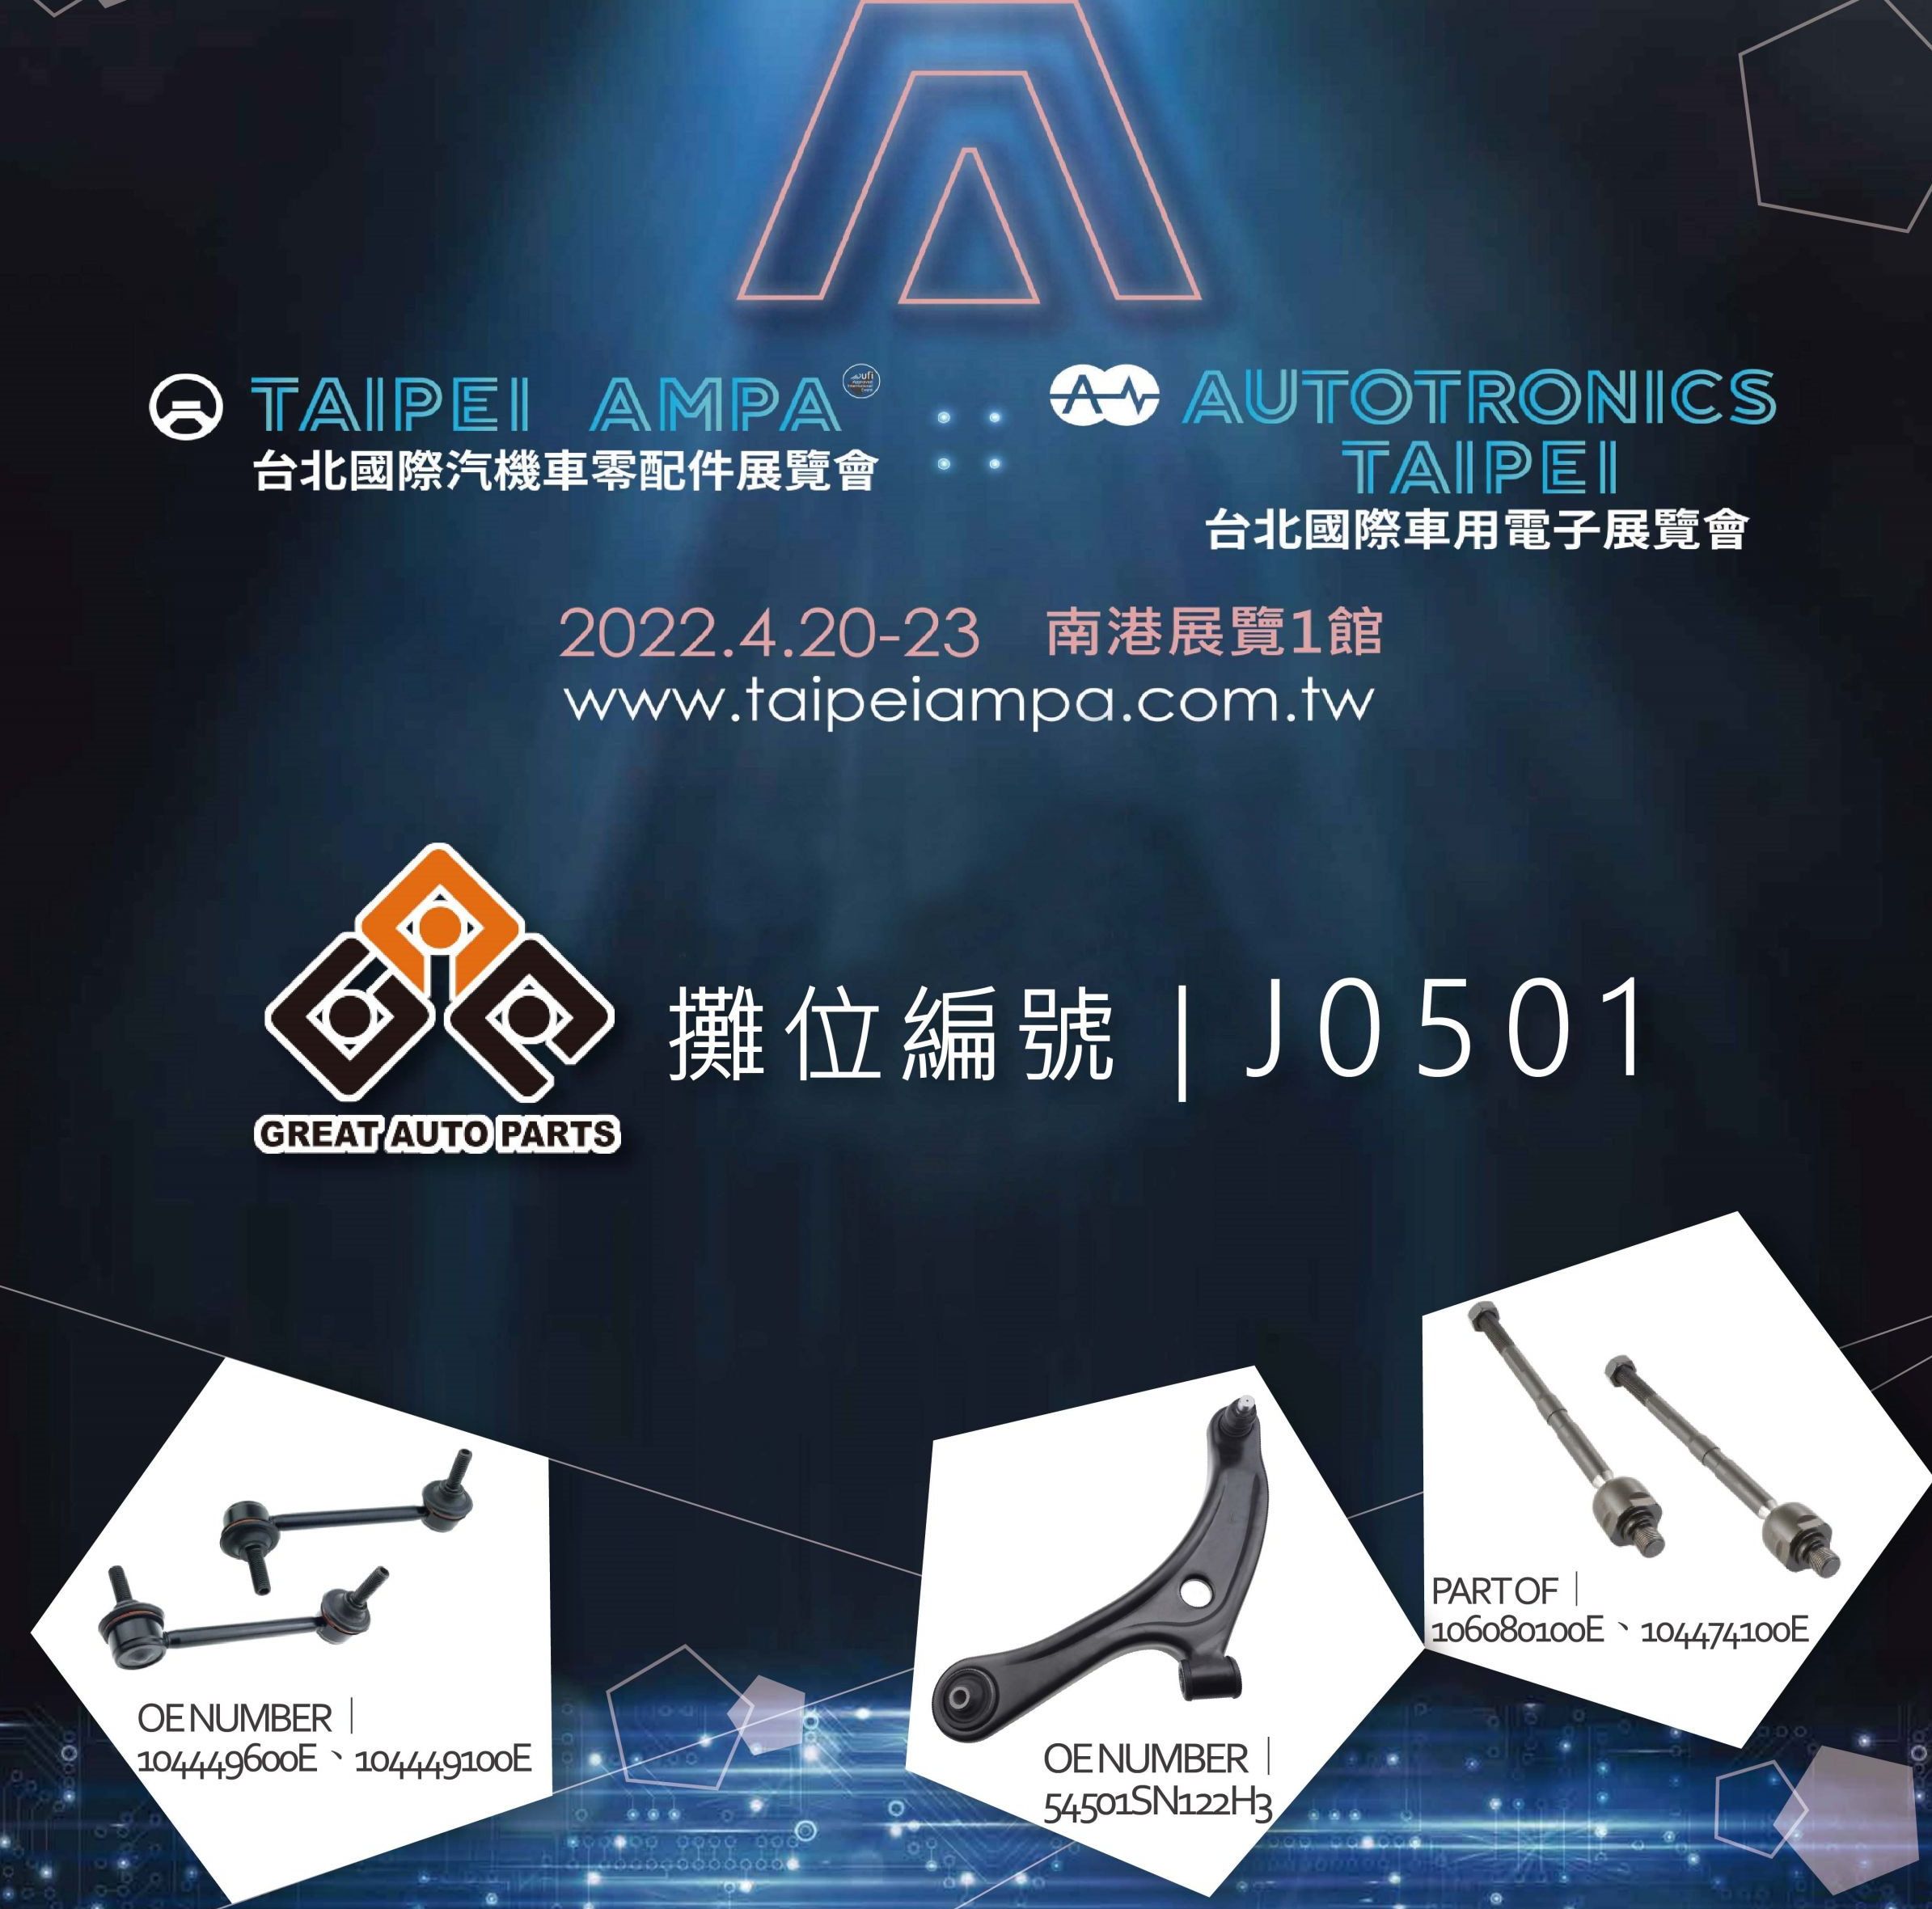 Taipei AMPA 2022 (Große Autoersatzteile)